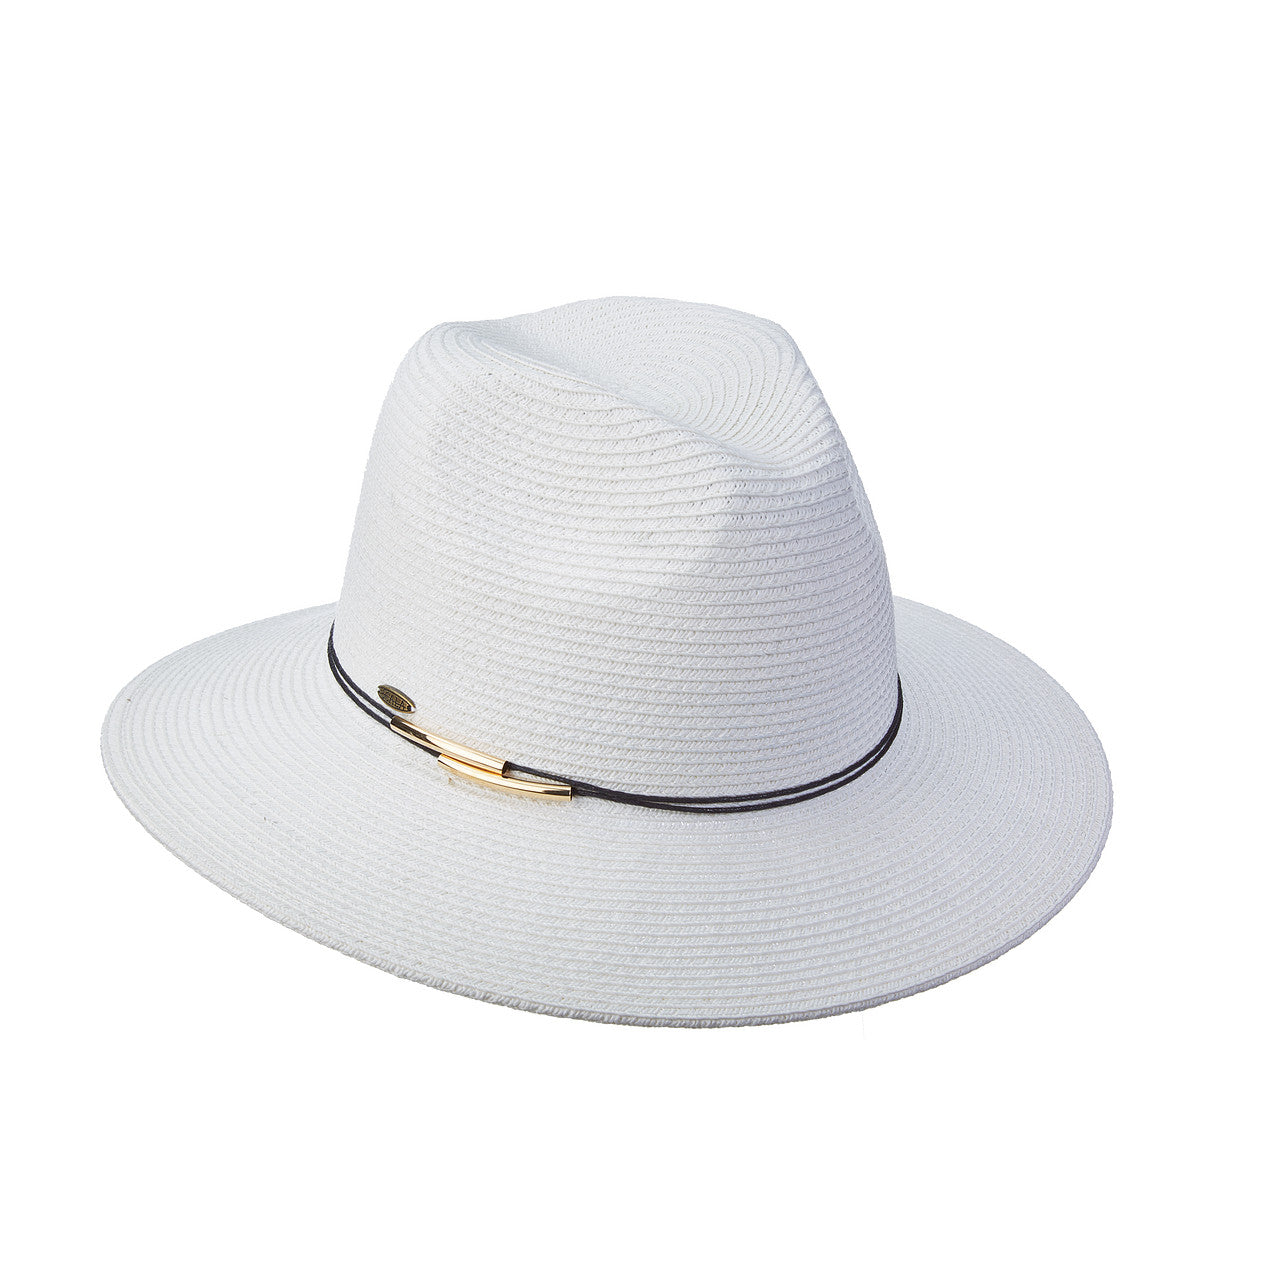 Vivianna Safari/Panama Hat in White Color